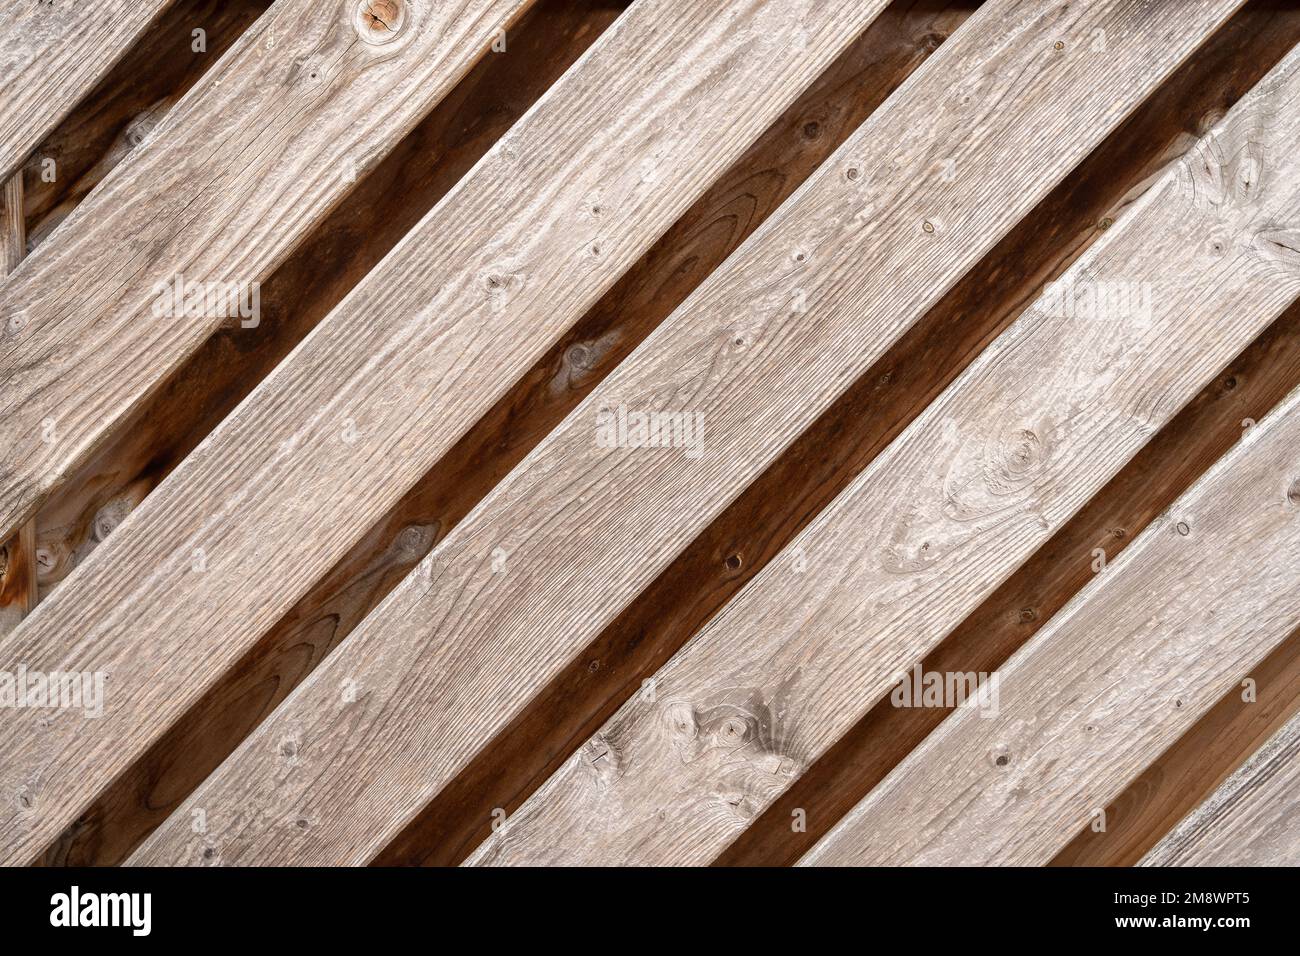 Legno batten ripada strappato pannelli di legno modello interior design decorativo legno duro materiale Foto Stock